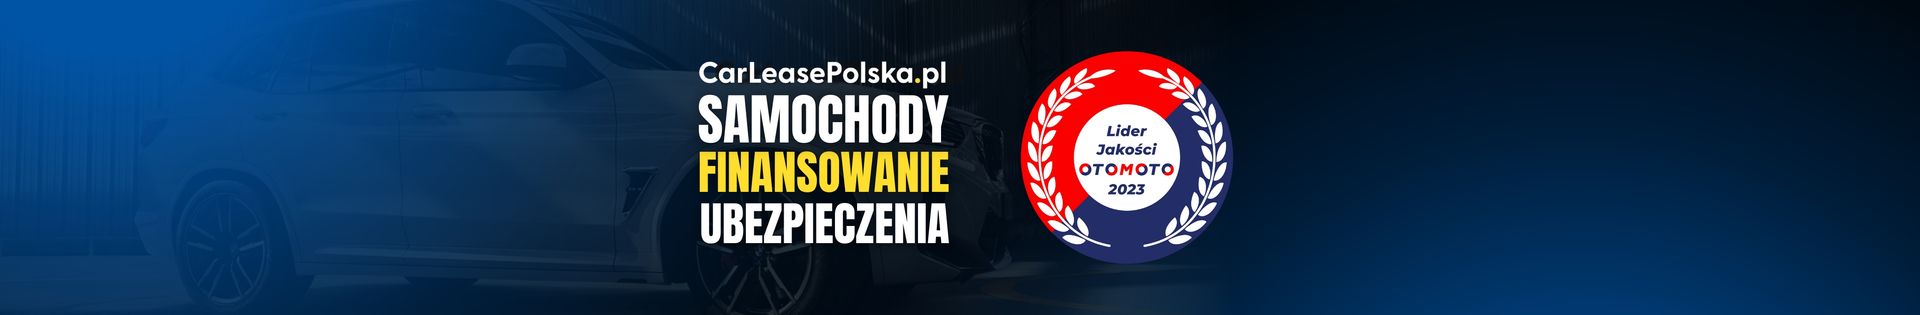 Car Lease Polska Sp. z o.o. top banner